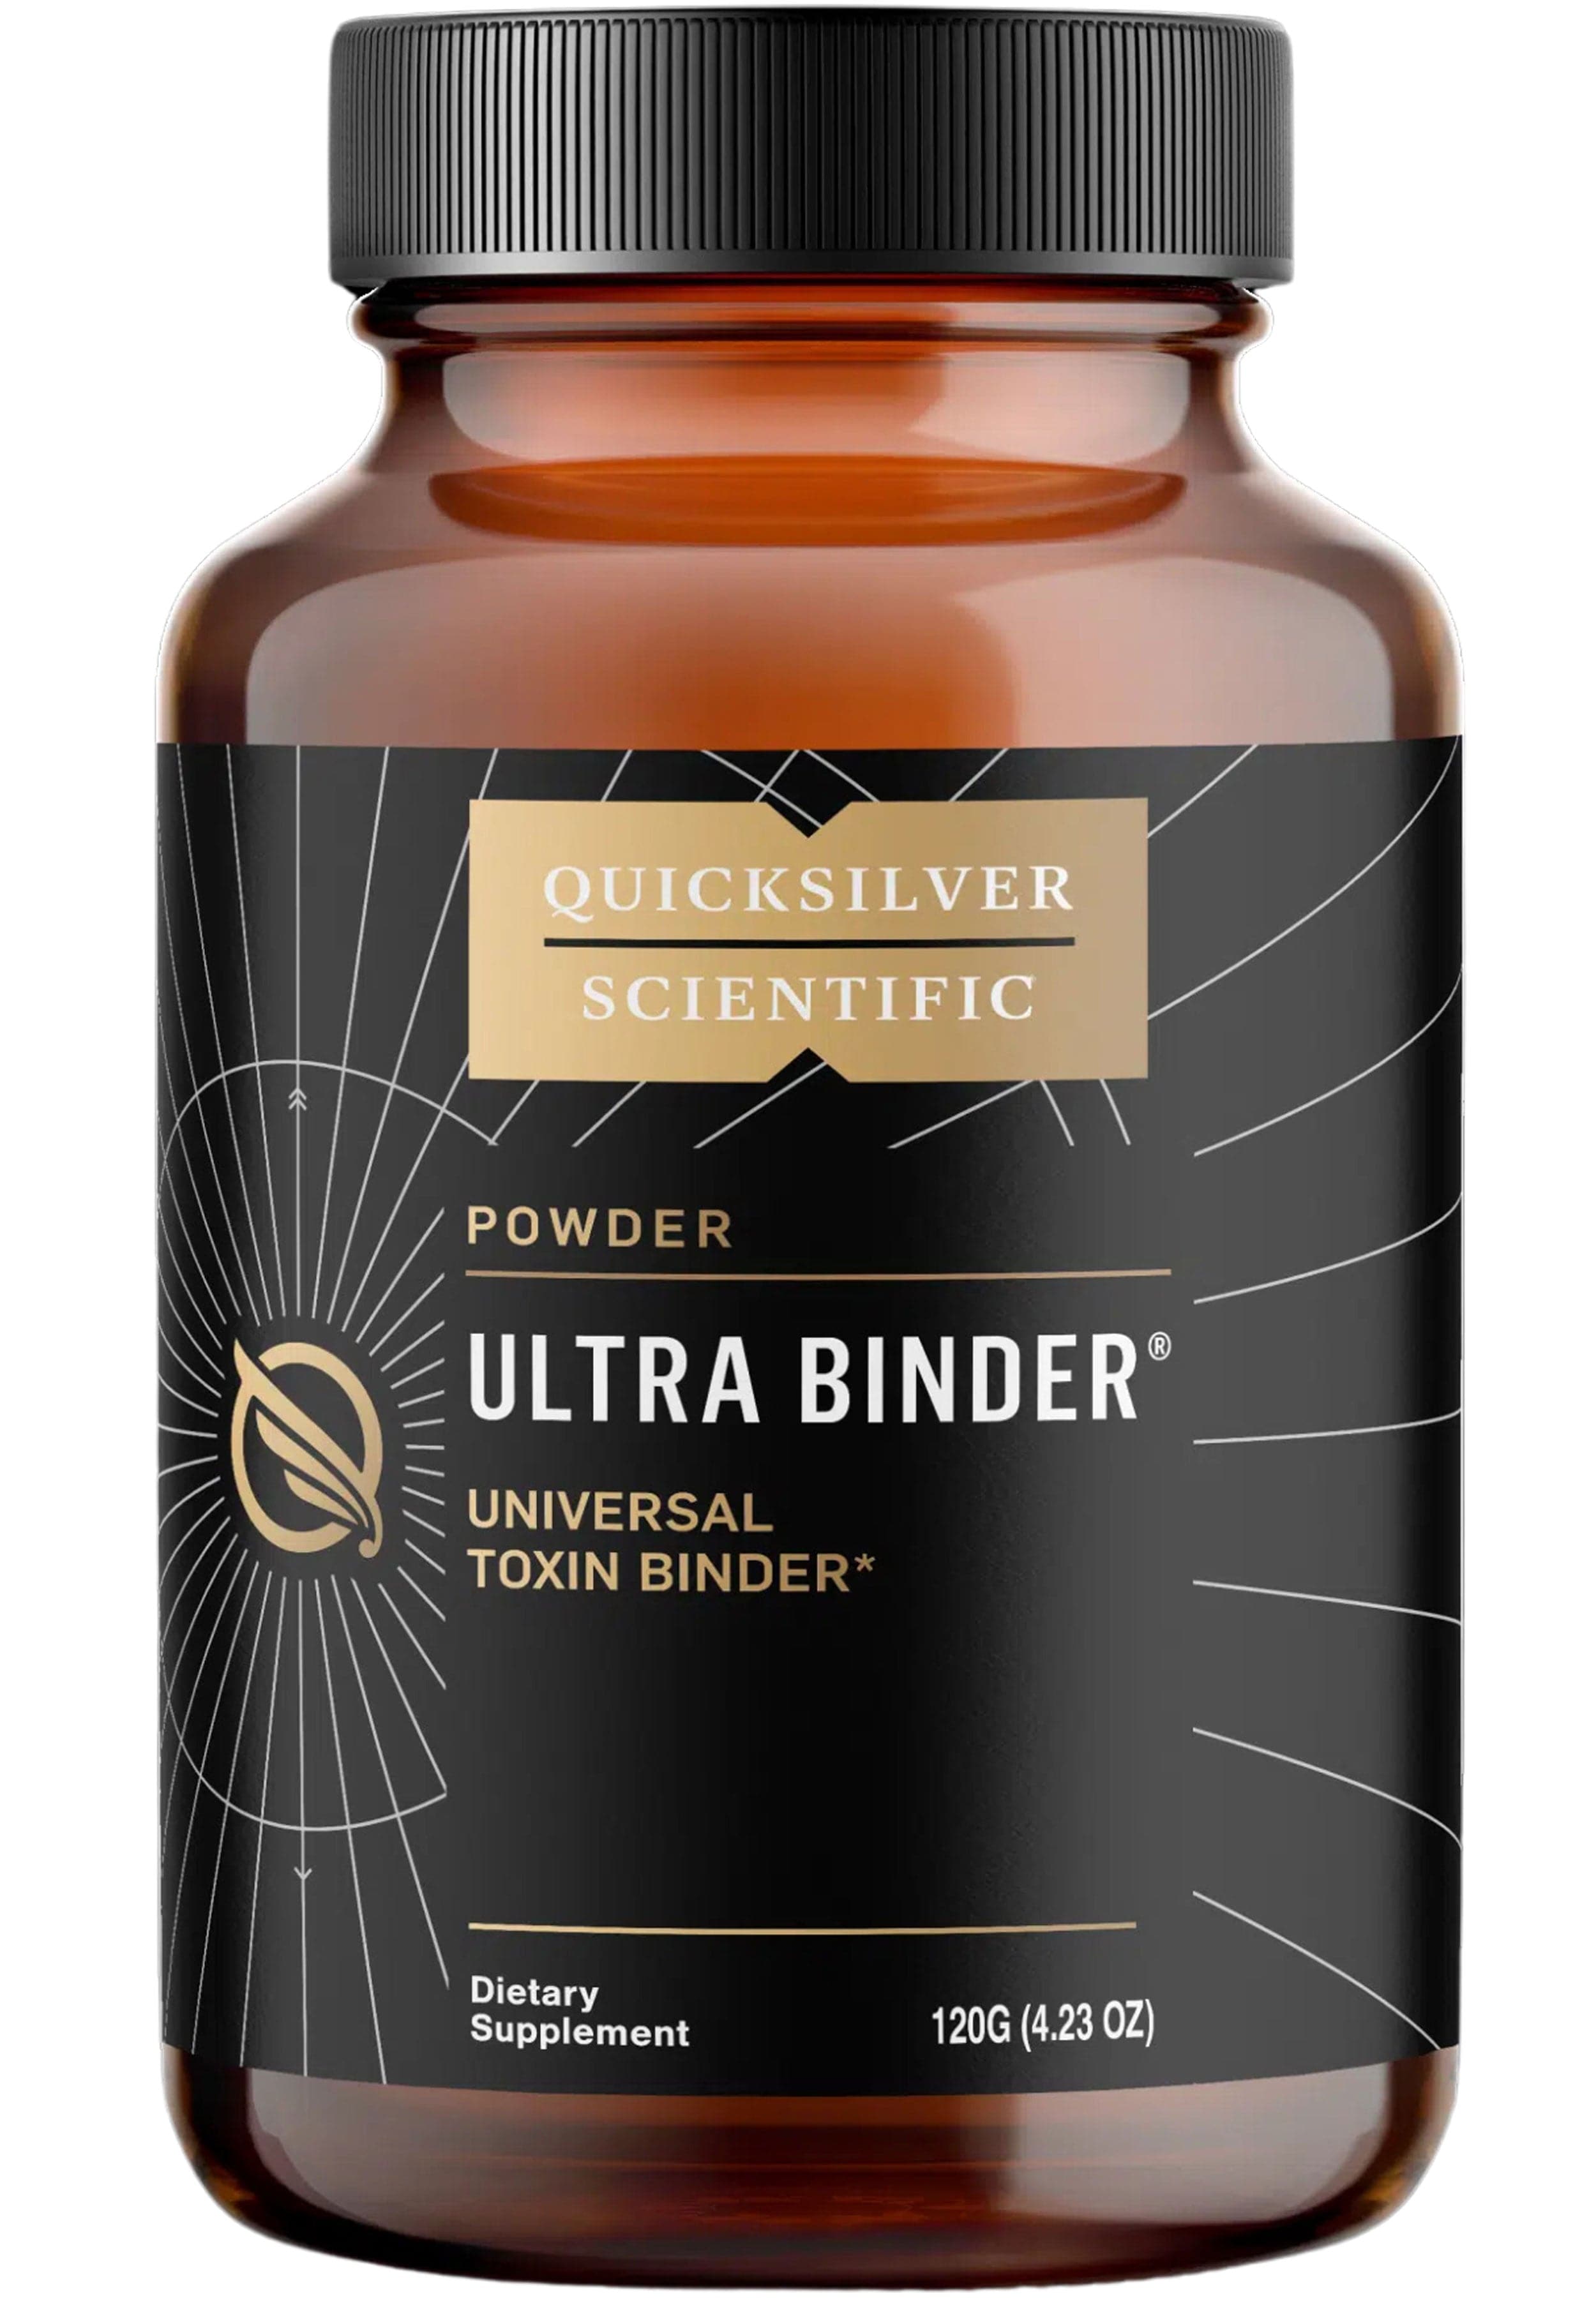 Quicksilver Scientific Ultra Binder, Universal Toxin Binder Powder